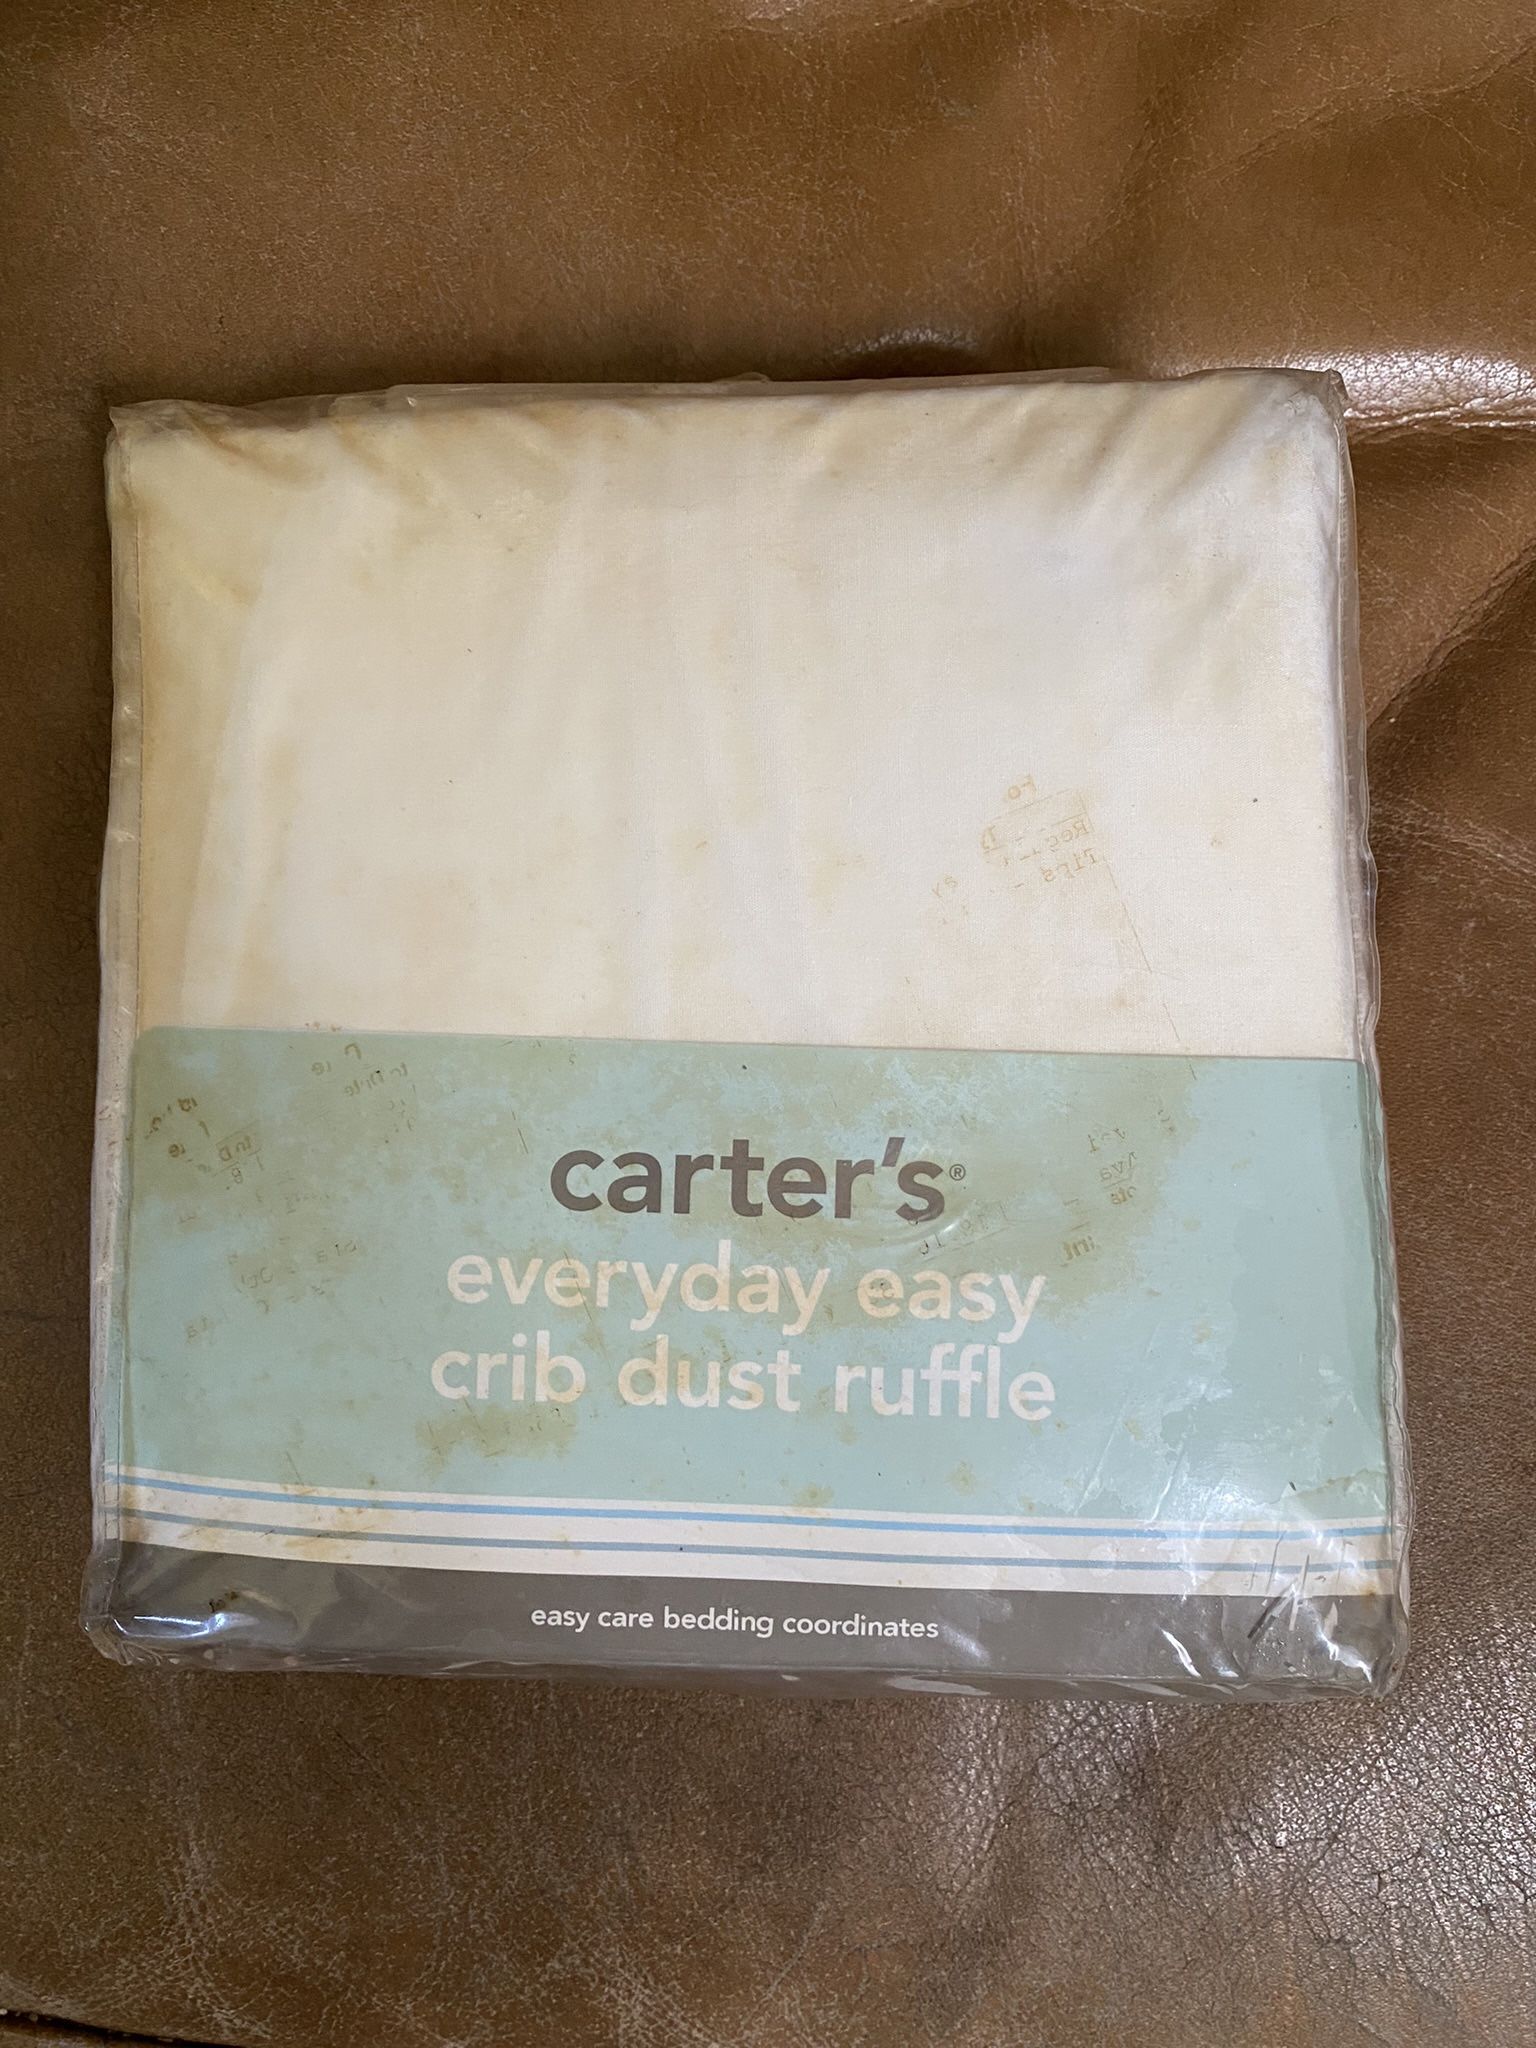 Brand New Carters Brand Crib Dust Ruffle( White)